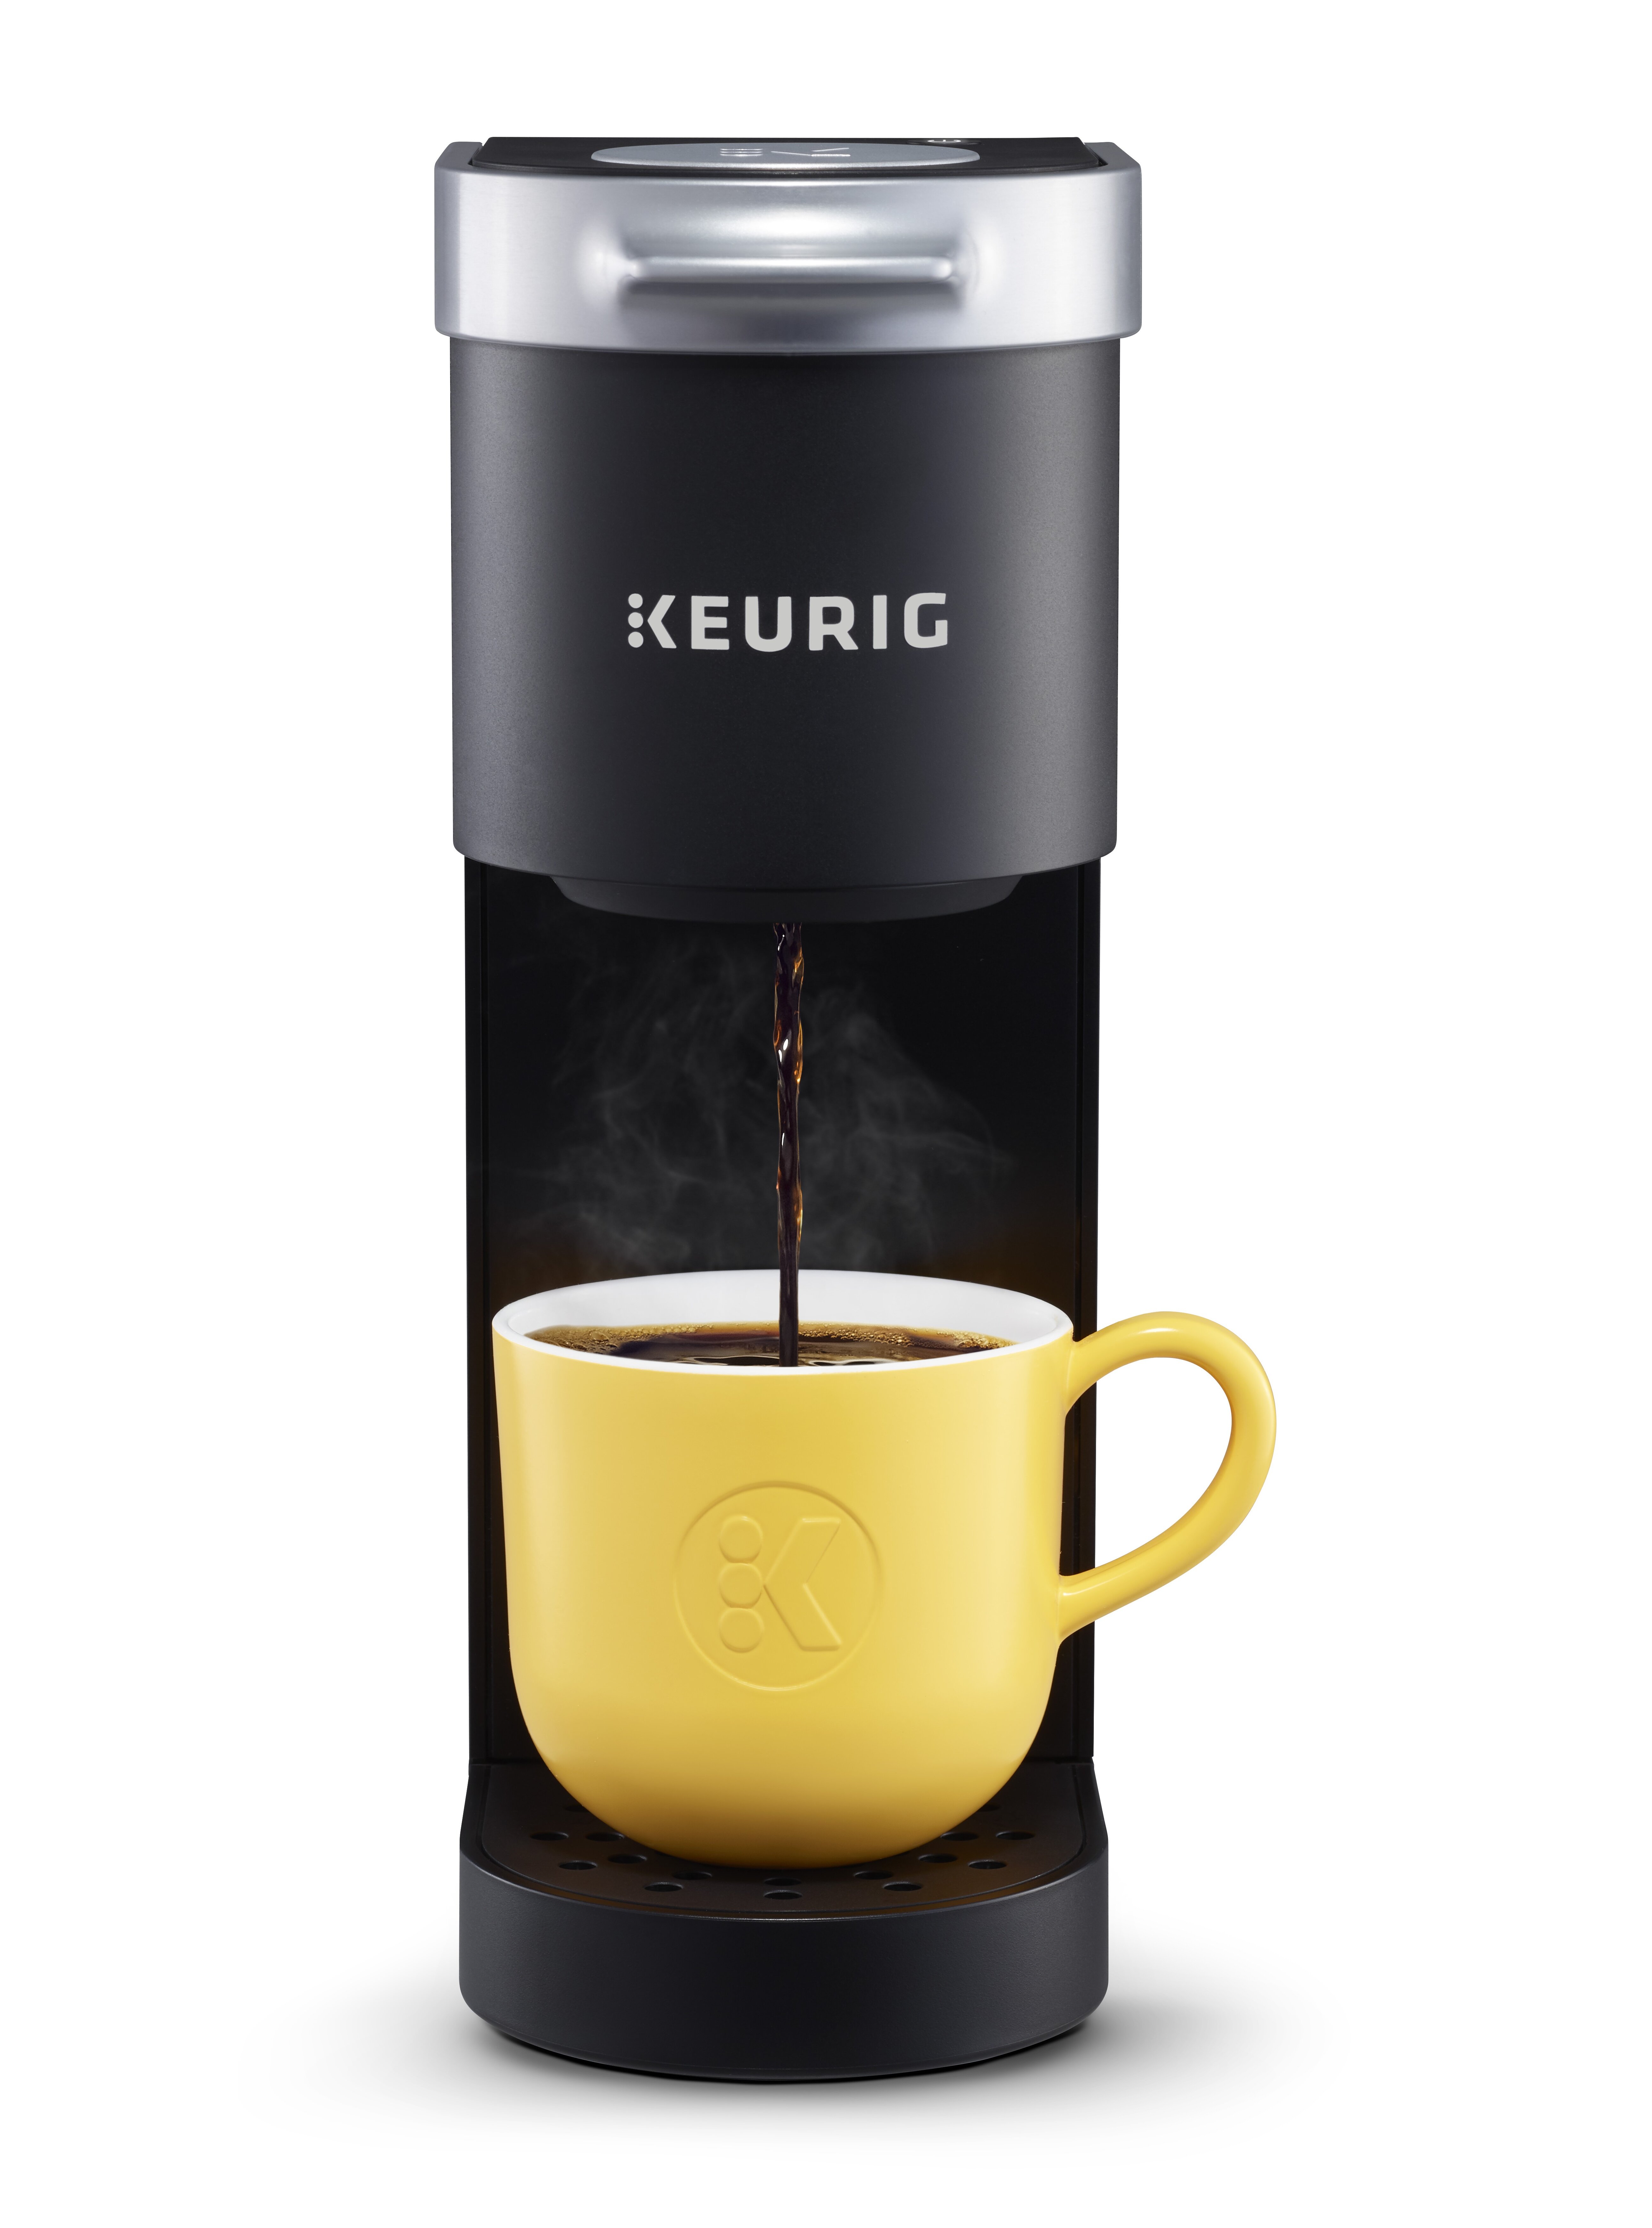 https://assets.wfcdn.com/im/46747288/compr-r85/7214/72144477/keurig-k-mini-single-serve-k-cup-pod-coffee-maker.jpg